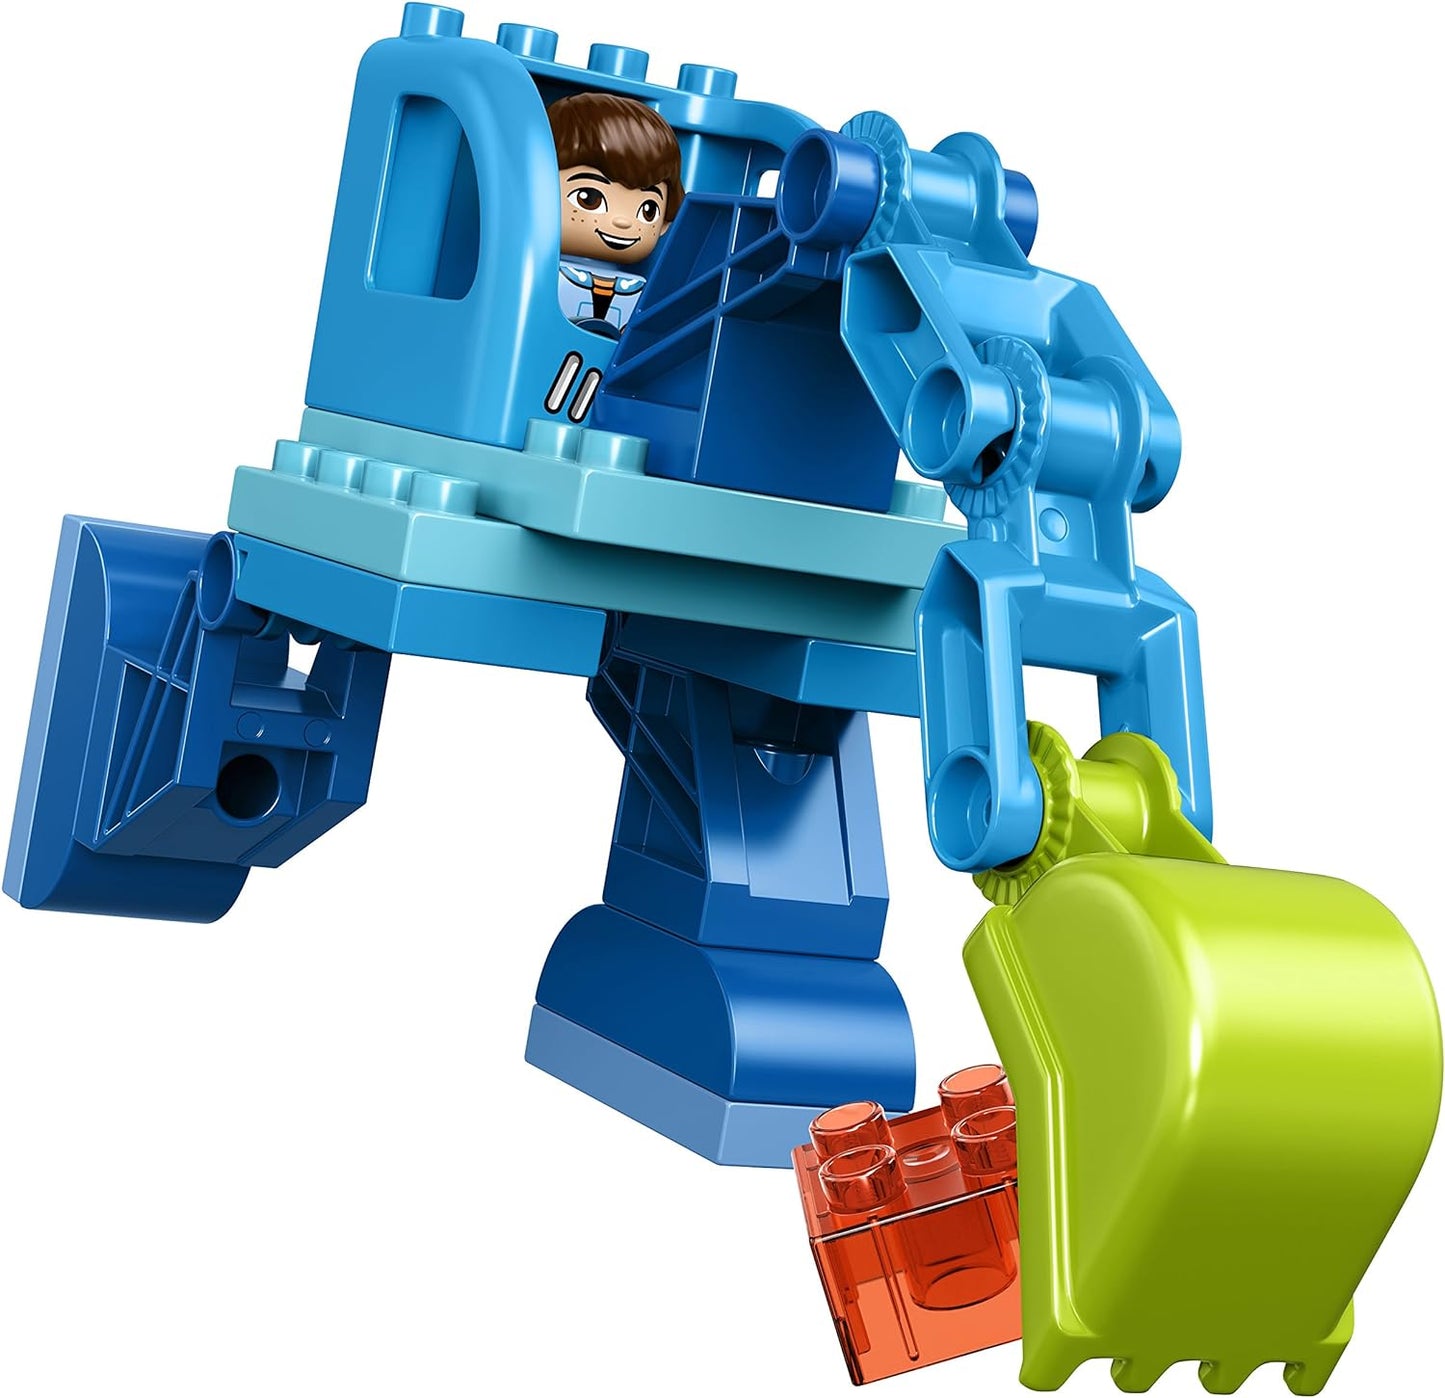 LEGO DUPLO Disney 10825 Miles Exo-Flex Suit Building Kit (37 Piece)